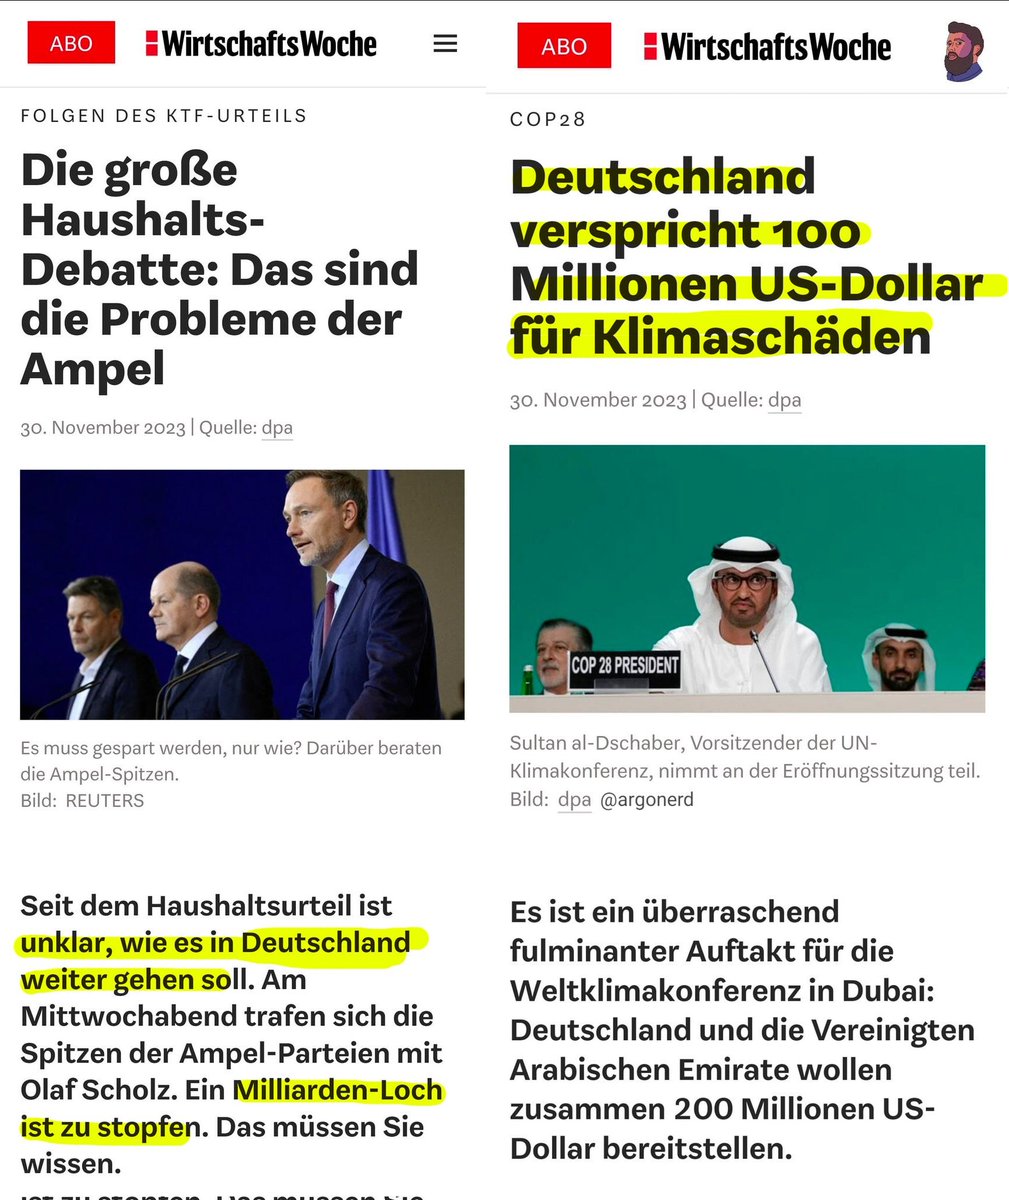 💸 Kein Haushaltsbudget, aber Deutschlands Millionenhilfe für Klimaschäden wird dreistellig

🥳 Überraschung!

👉 Warum sollte man das machen, außer man ist korrupt und verdient daran?